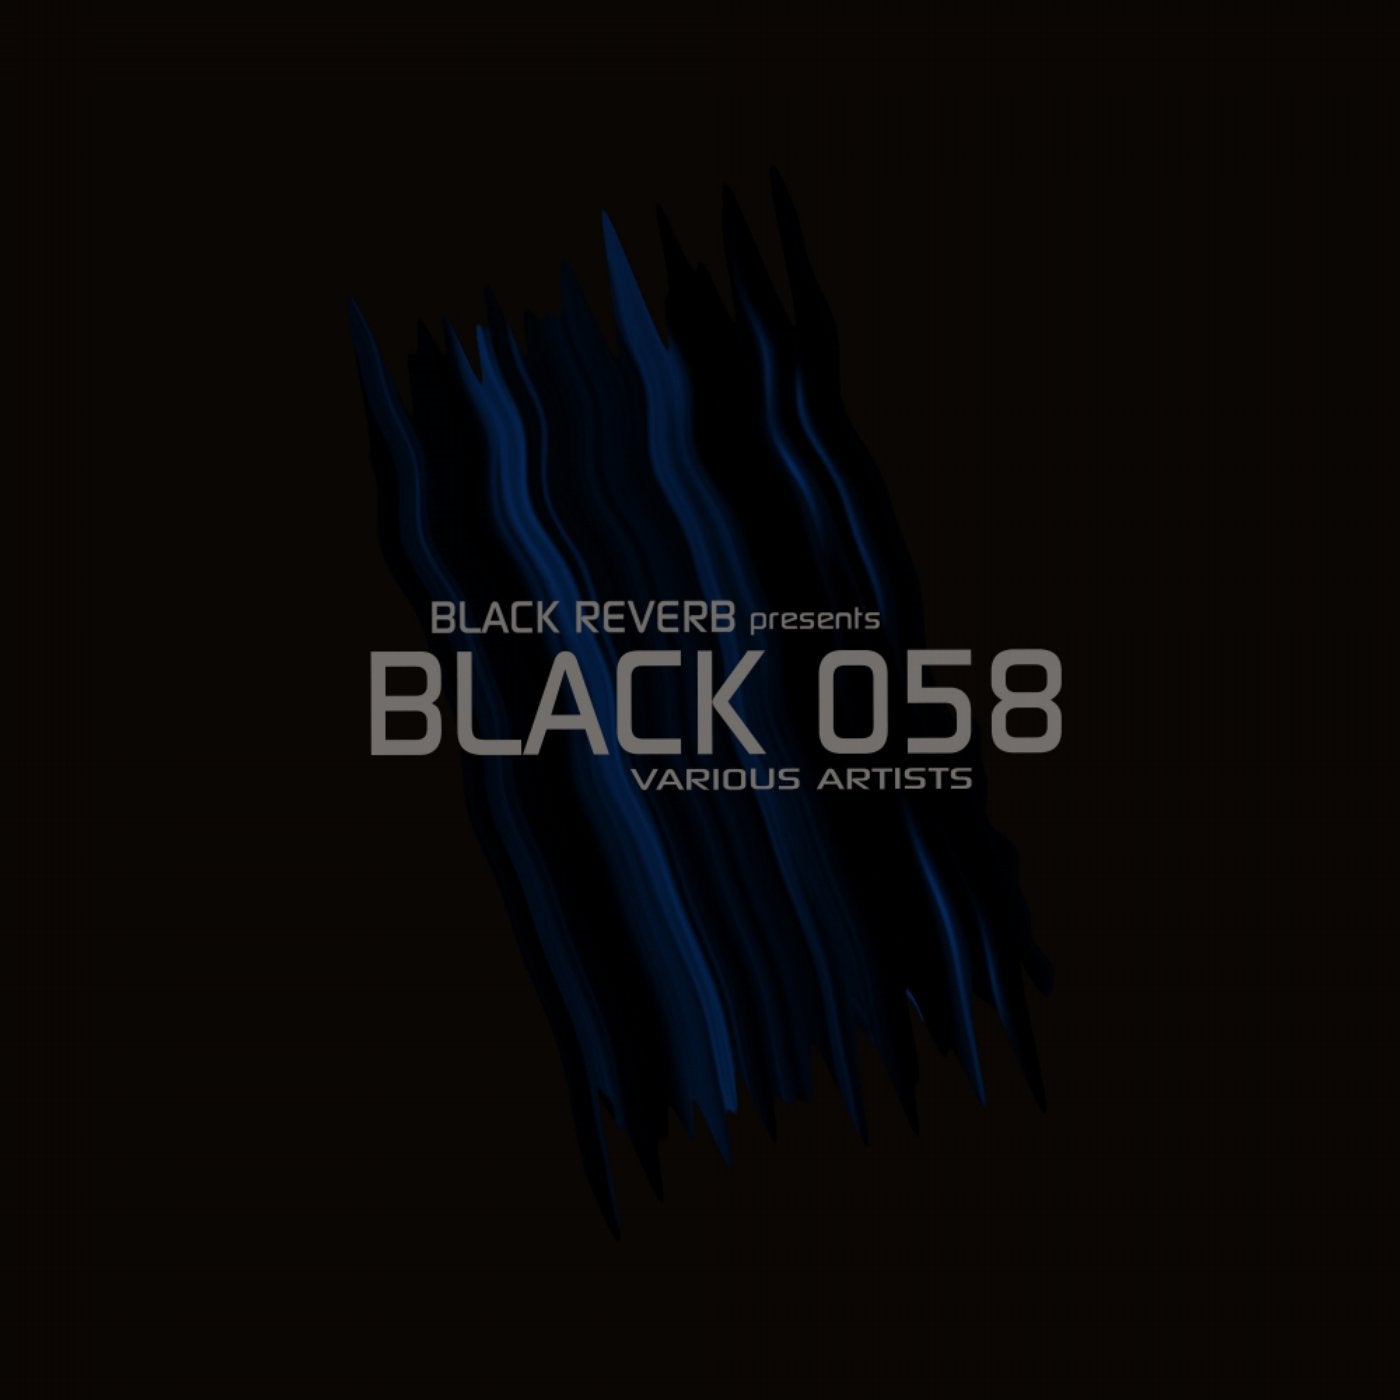 Black 058